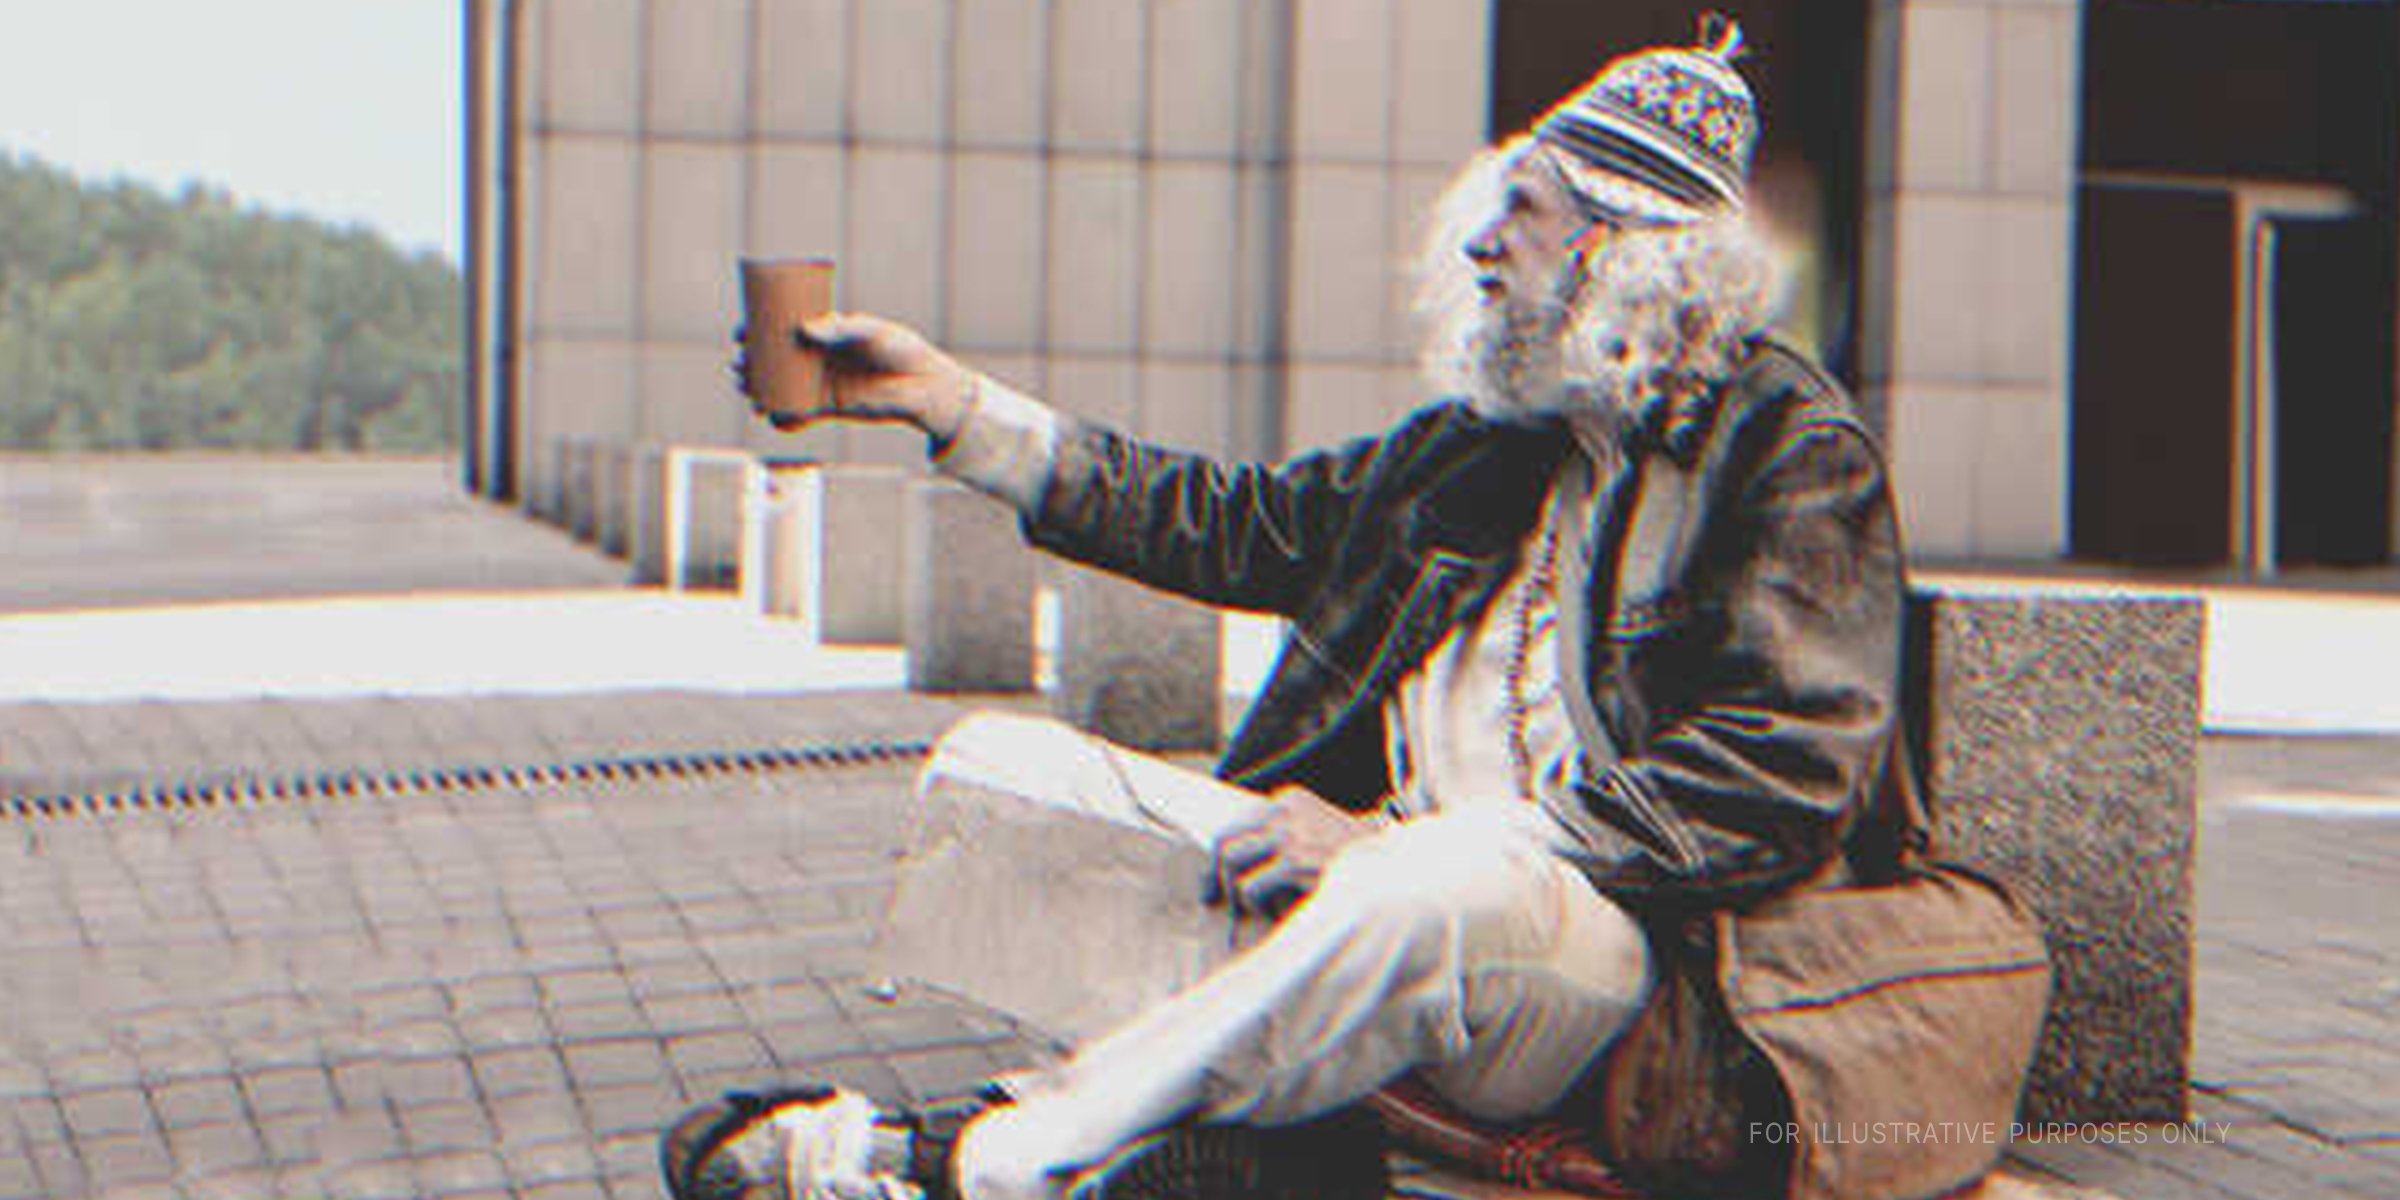 Homeless man sitting on the street | Shutterstock